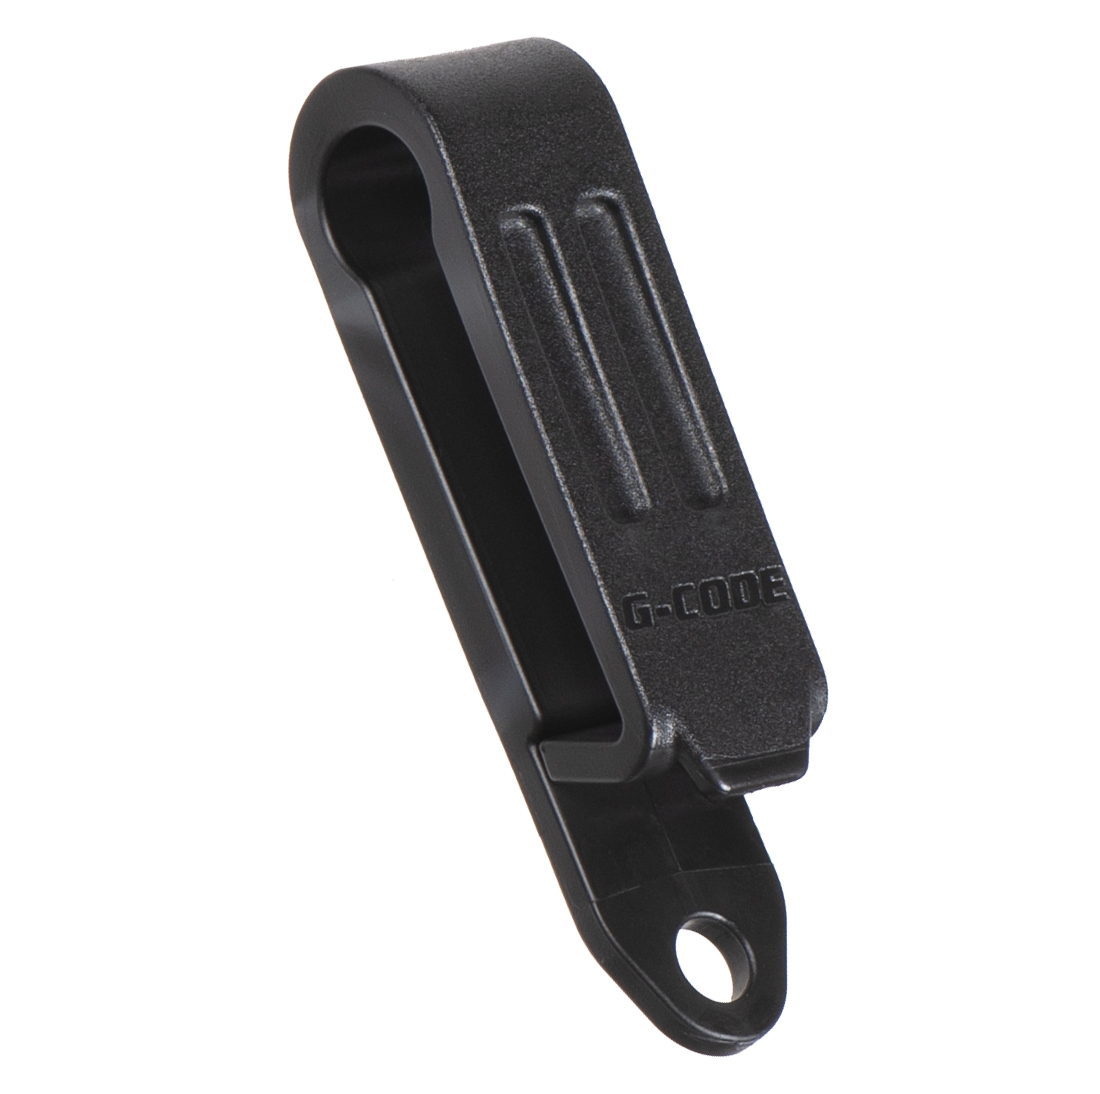 belt clip keyring, belt clip keyring Suppliers and Manufacturers